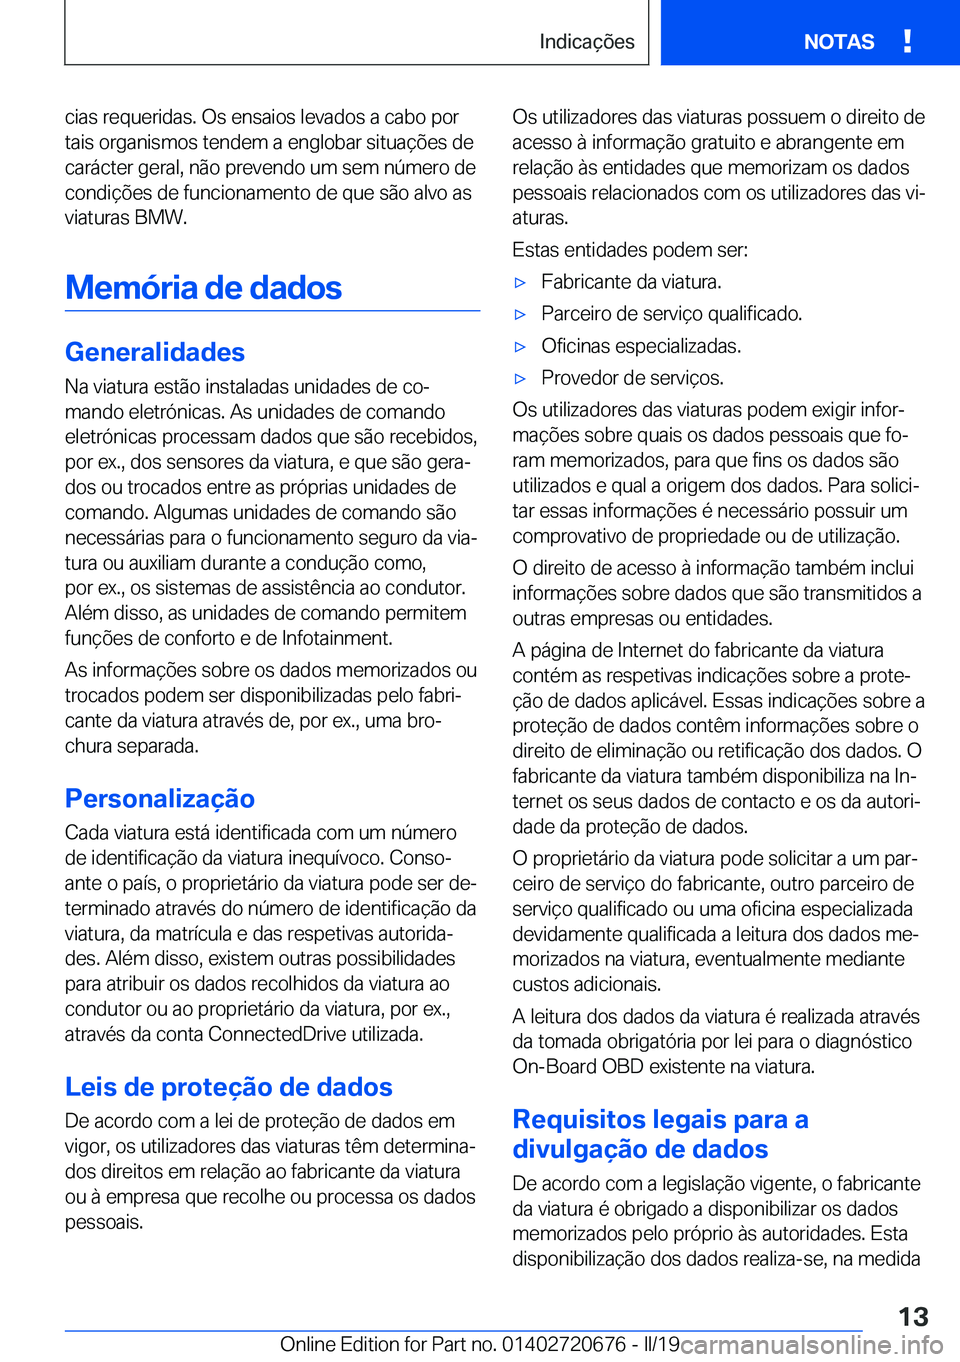 BMW M5 2019  Manual do condutor (in Portuguese) �c�i�a�s��r�e�q�u�e�r�i�d�a�s�.��O�s��e�n�s�a�i�o�s��l�e�v�a�d�o�s��a��c�a�b�o��p�o�r�t�a�i�s��o�r�g�a�n�i�s�m�o�s��t�e�n�d�e�m��a��e�n�g�l�o�b�a�r��s�i�t�u�a�